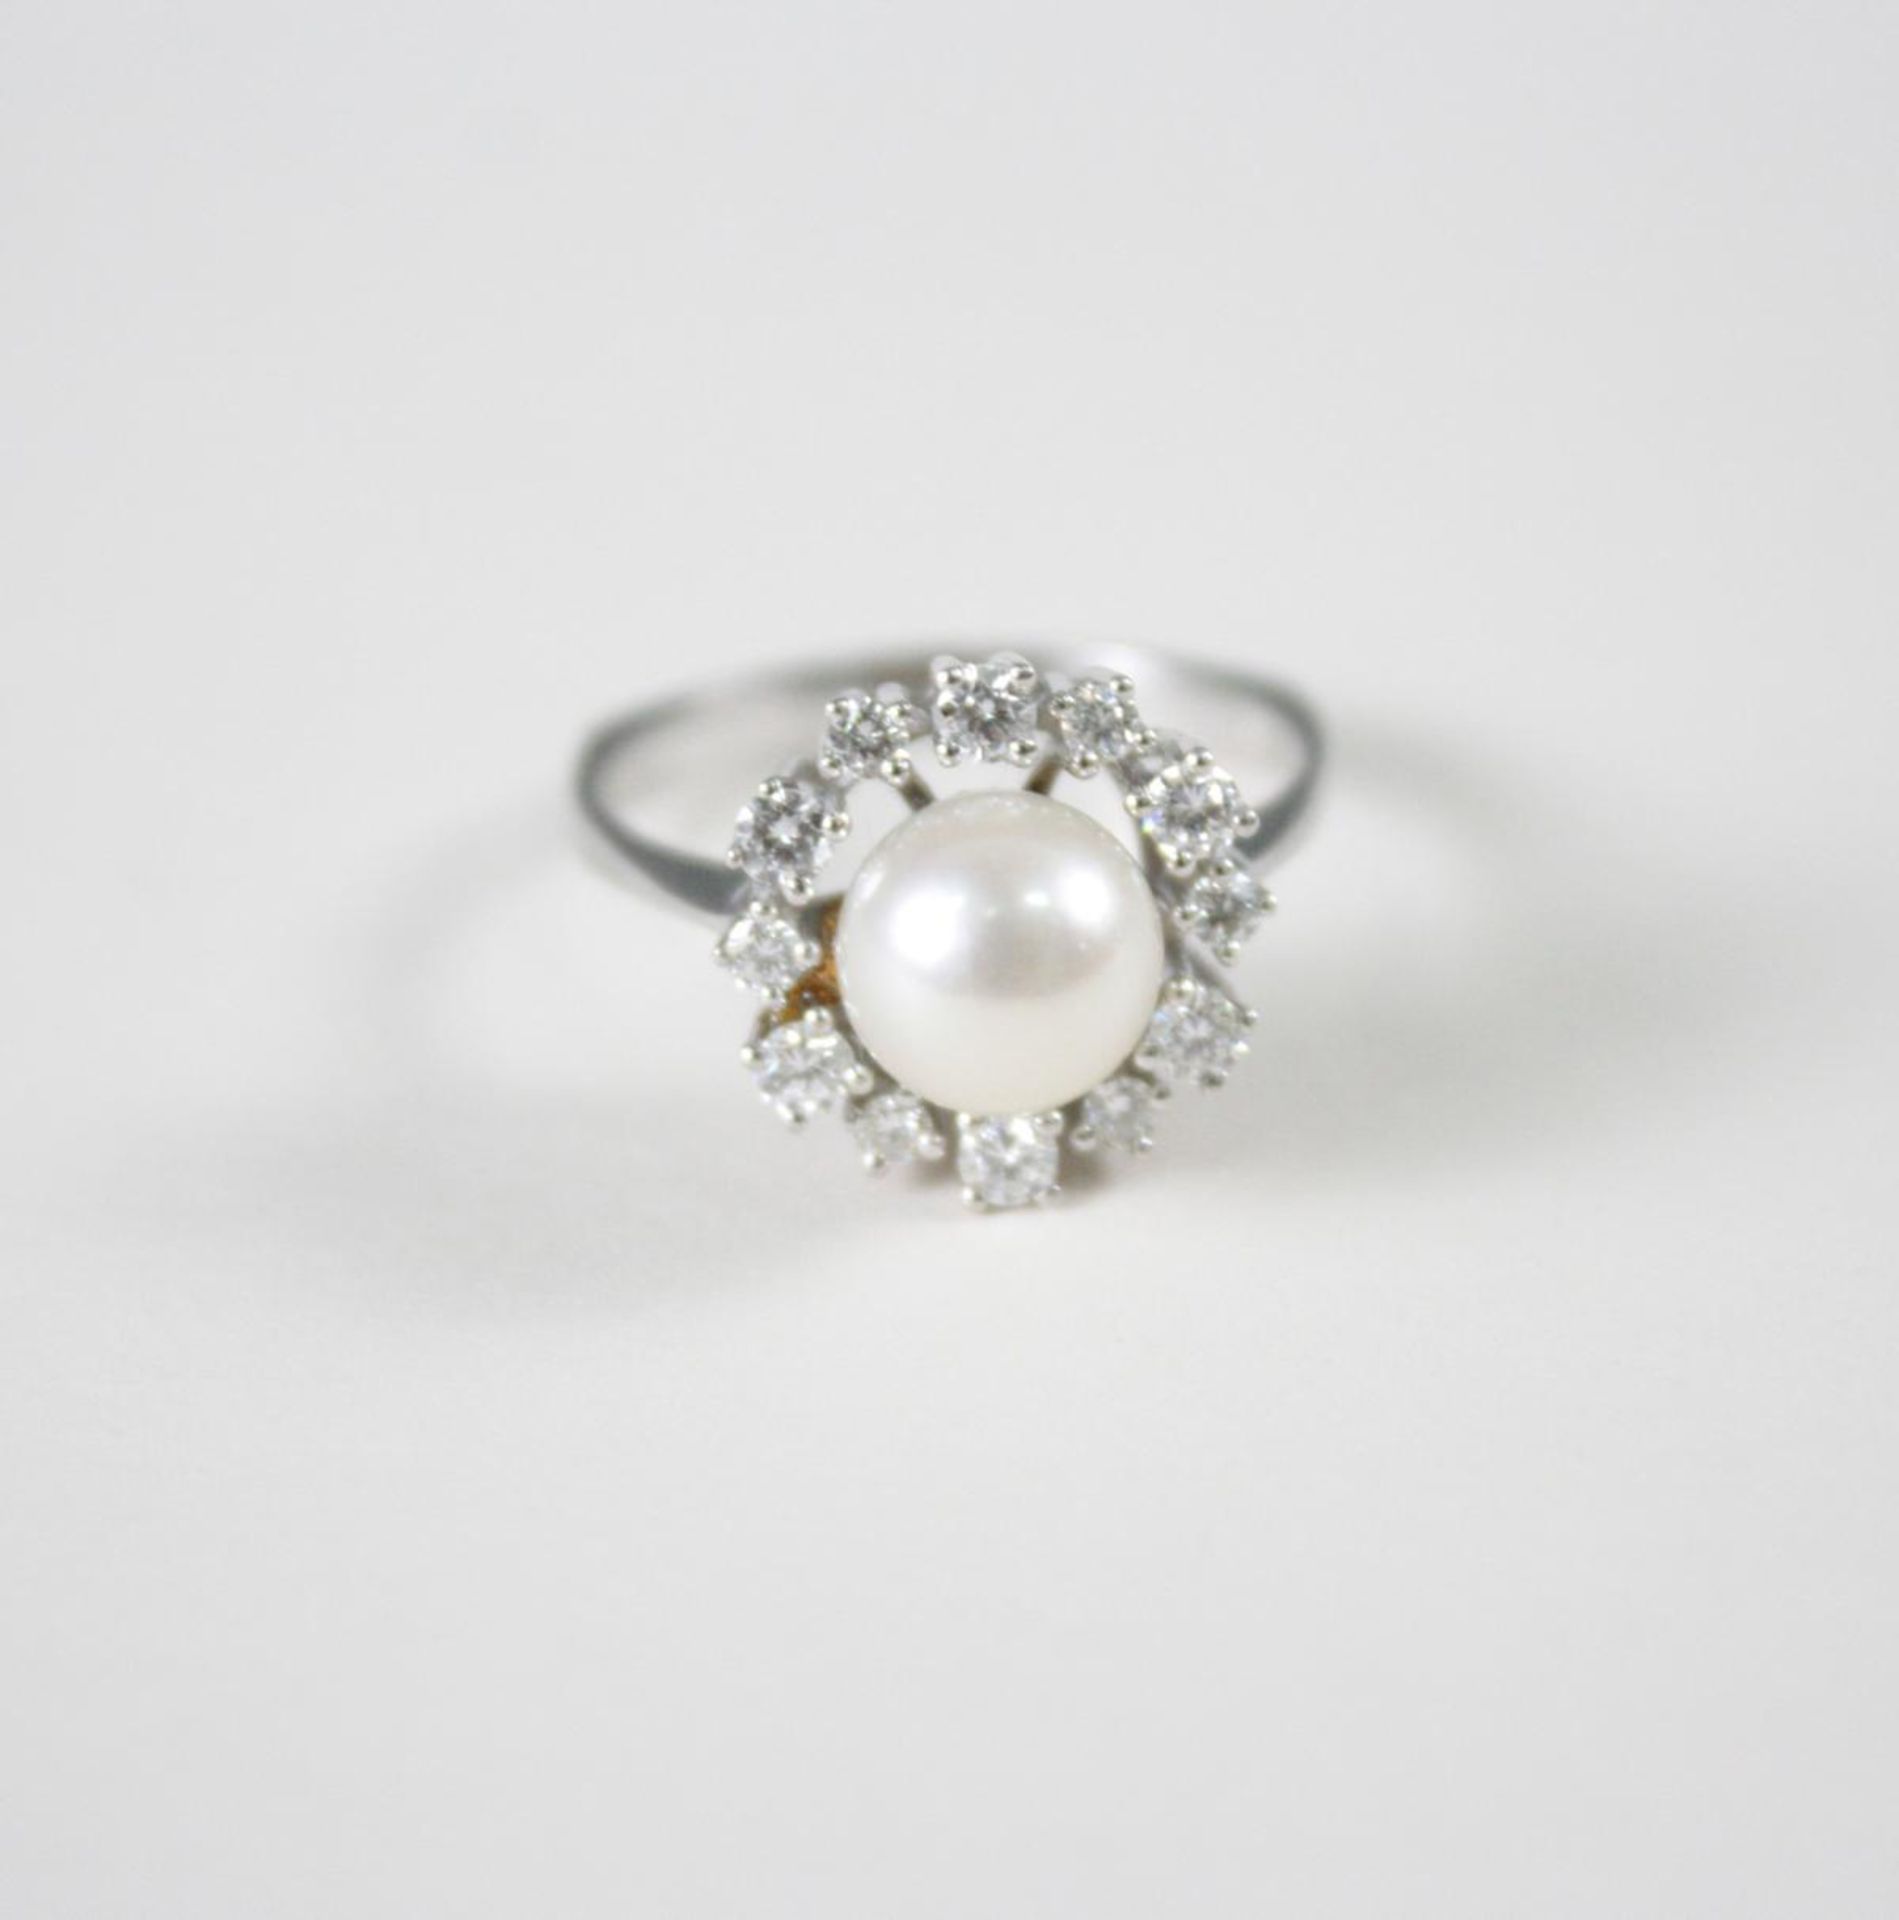 Damenring mit Perle und Diamanten, 14 Karat Weißgold1 Perle Durchmesser 0,79 cm, 12 Diamanten von